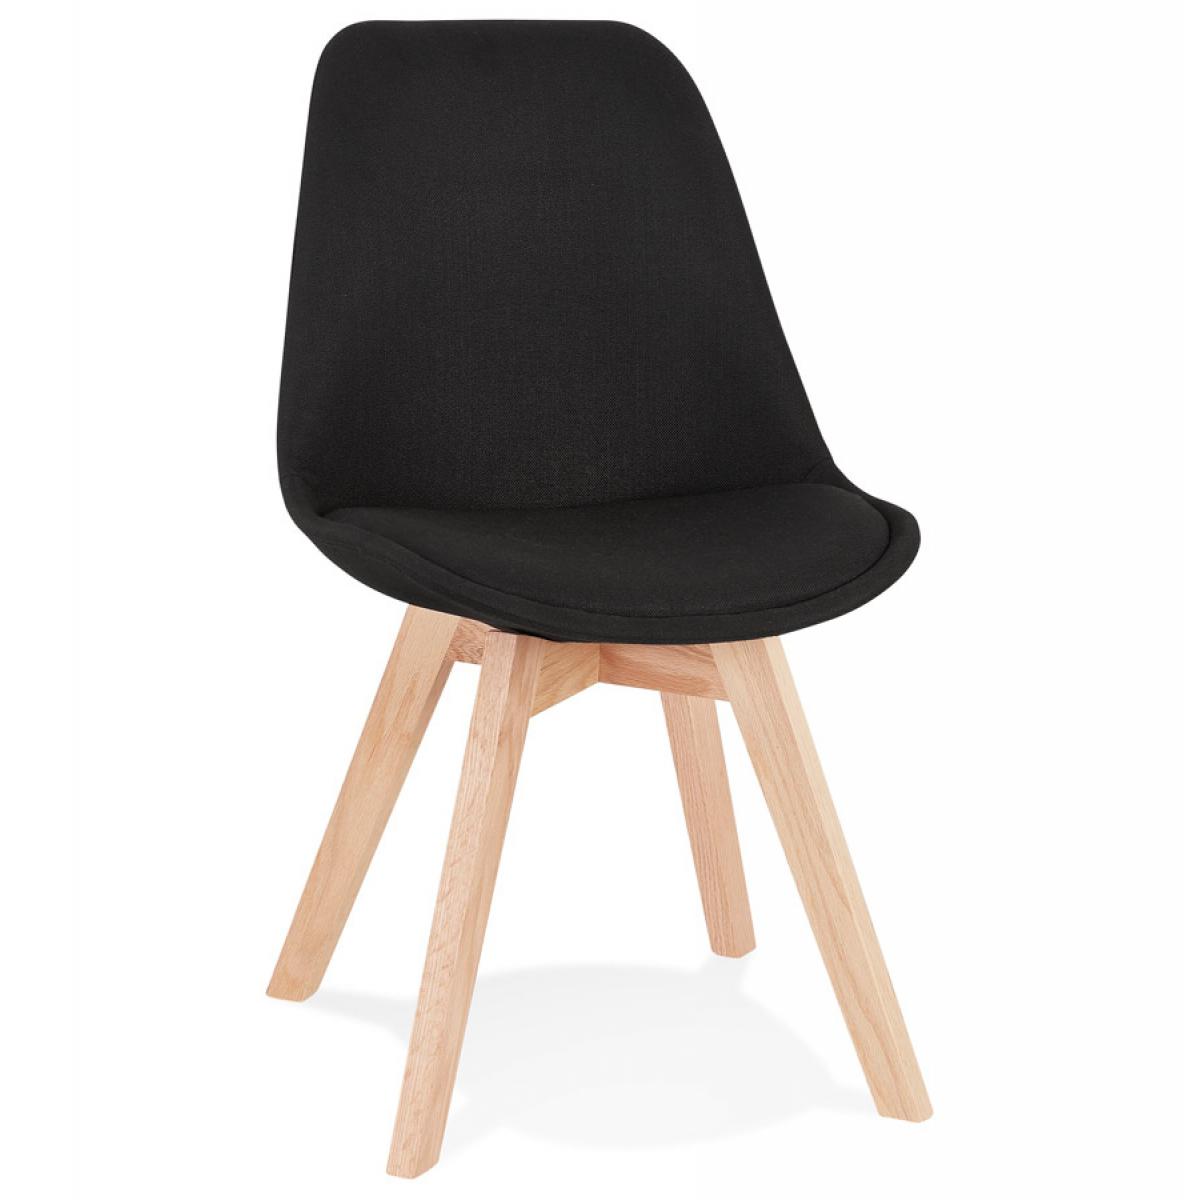 Alterego - Chaise scandinave 'WILLY' en tissu noir avec pieds en bois finition naturelle - Chaises